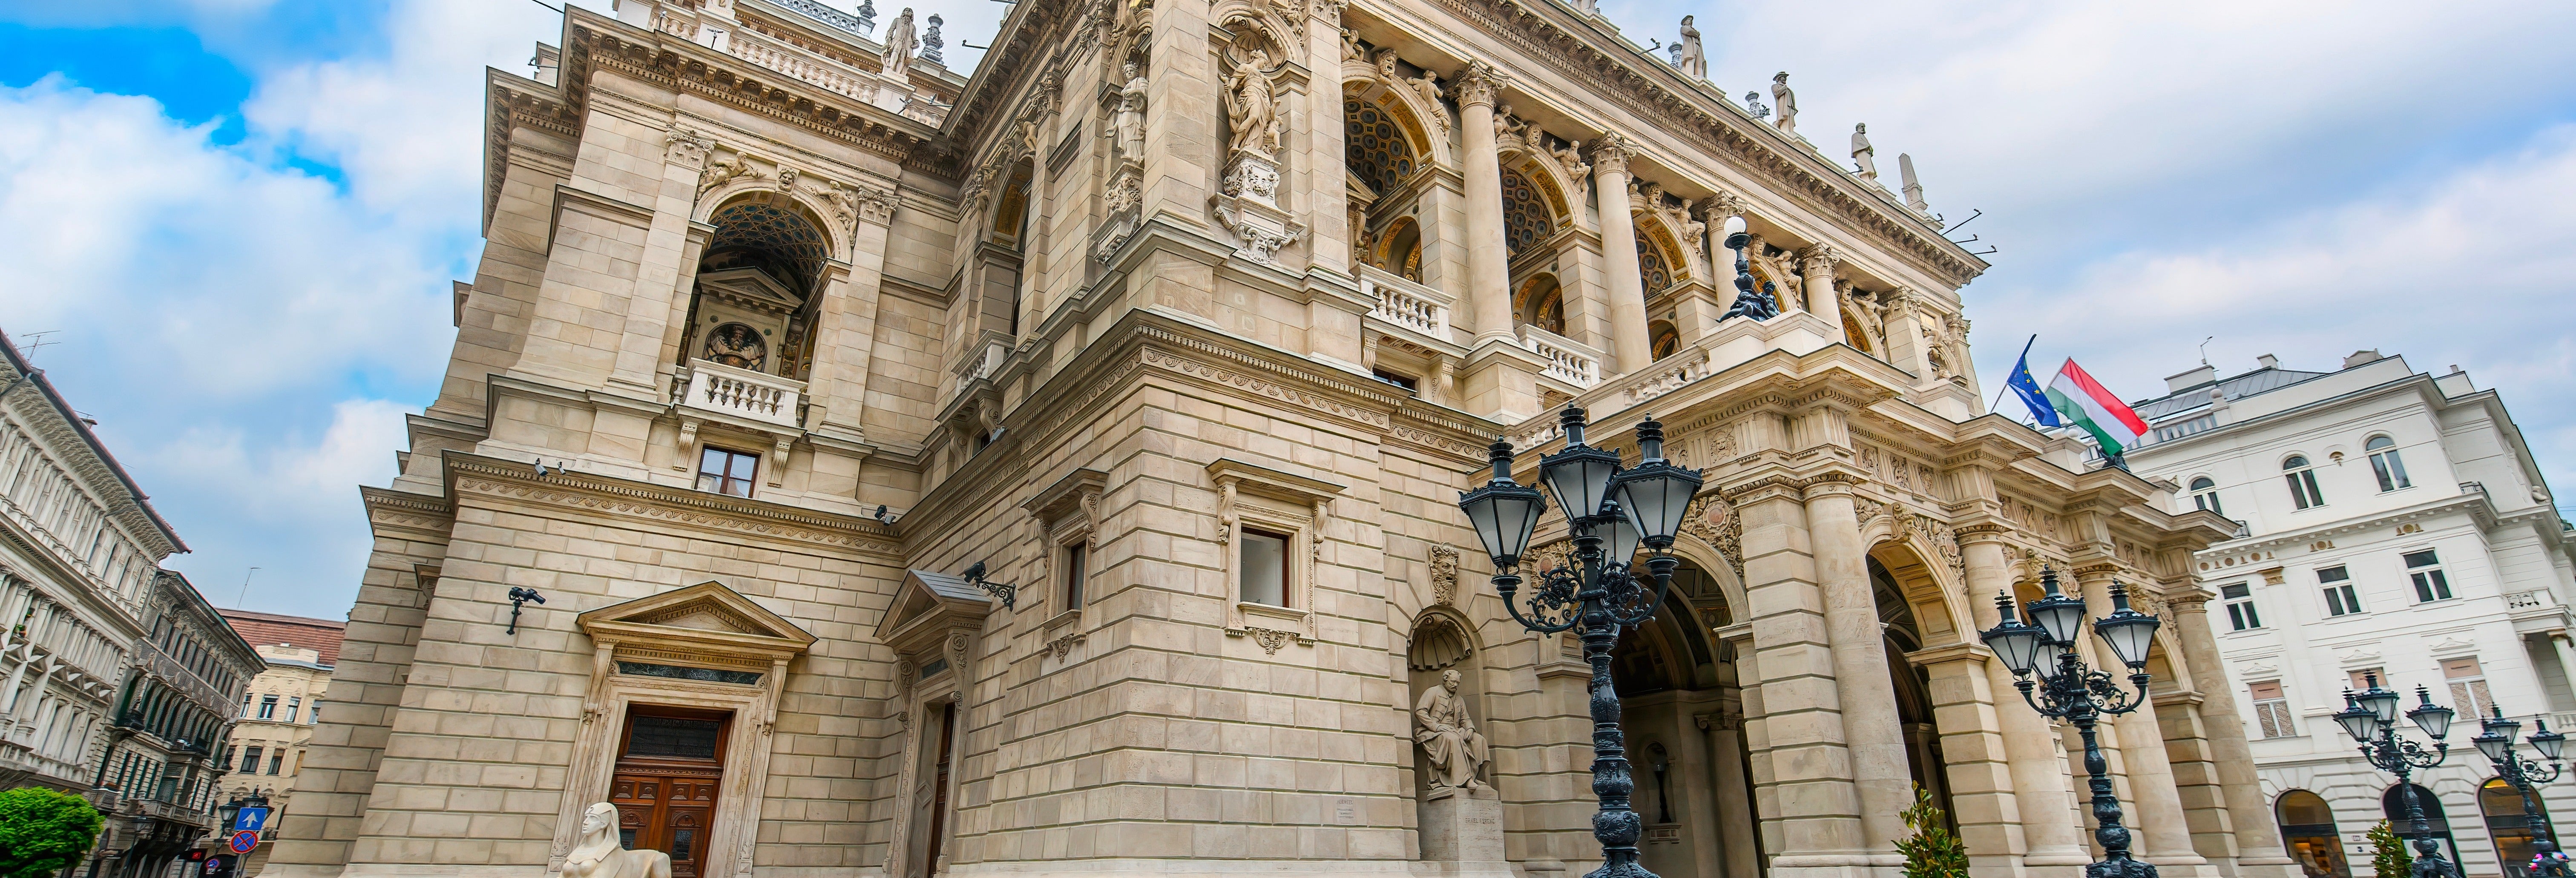 Visita guiada pela Ópera de Budapeste